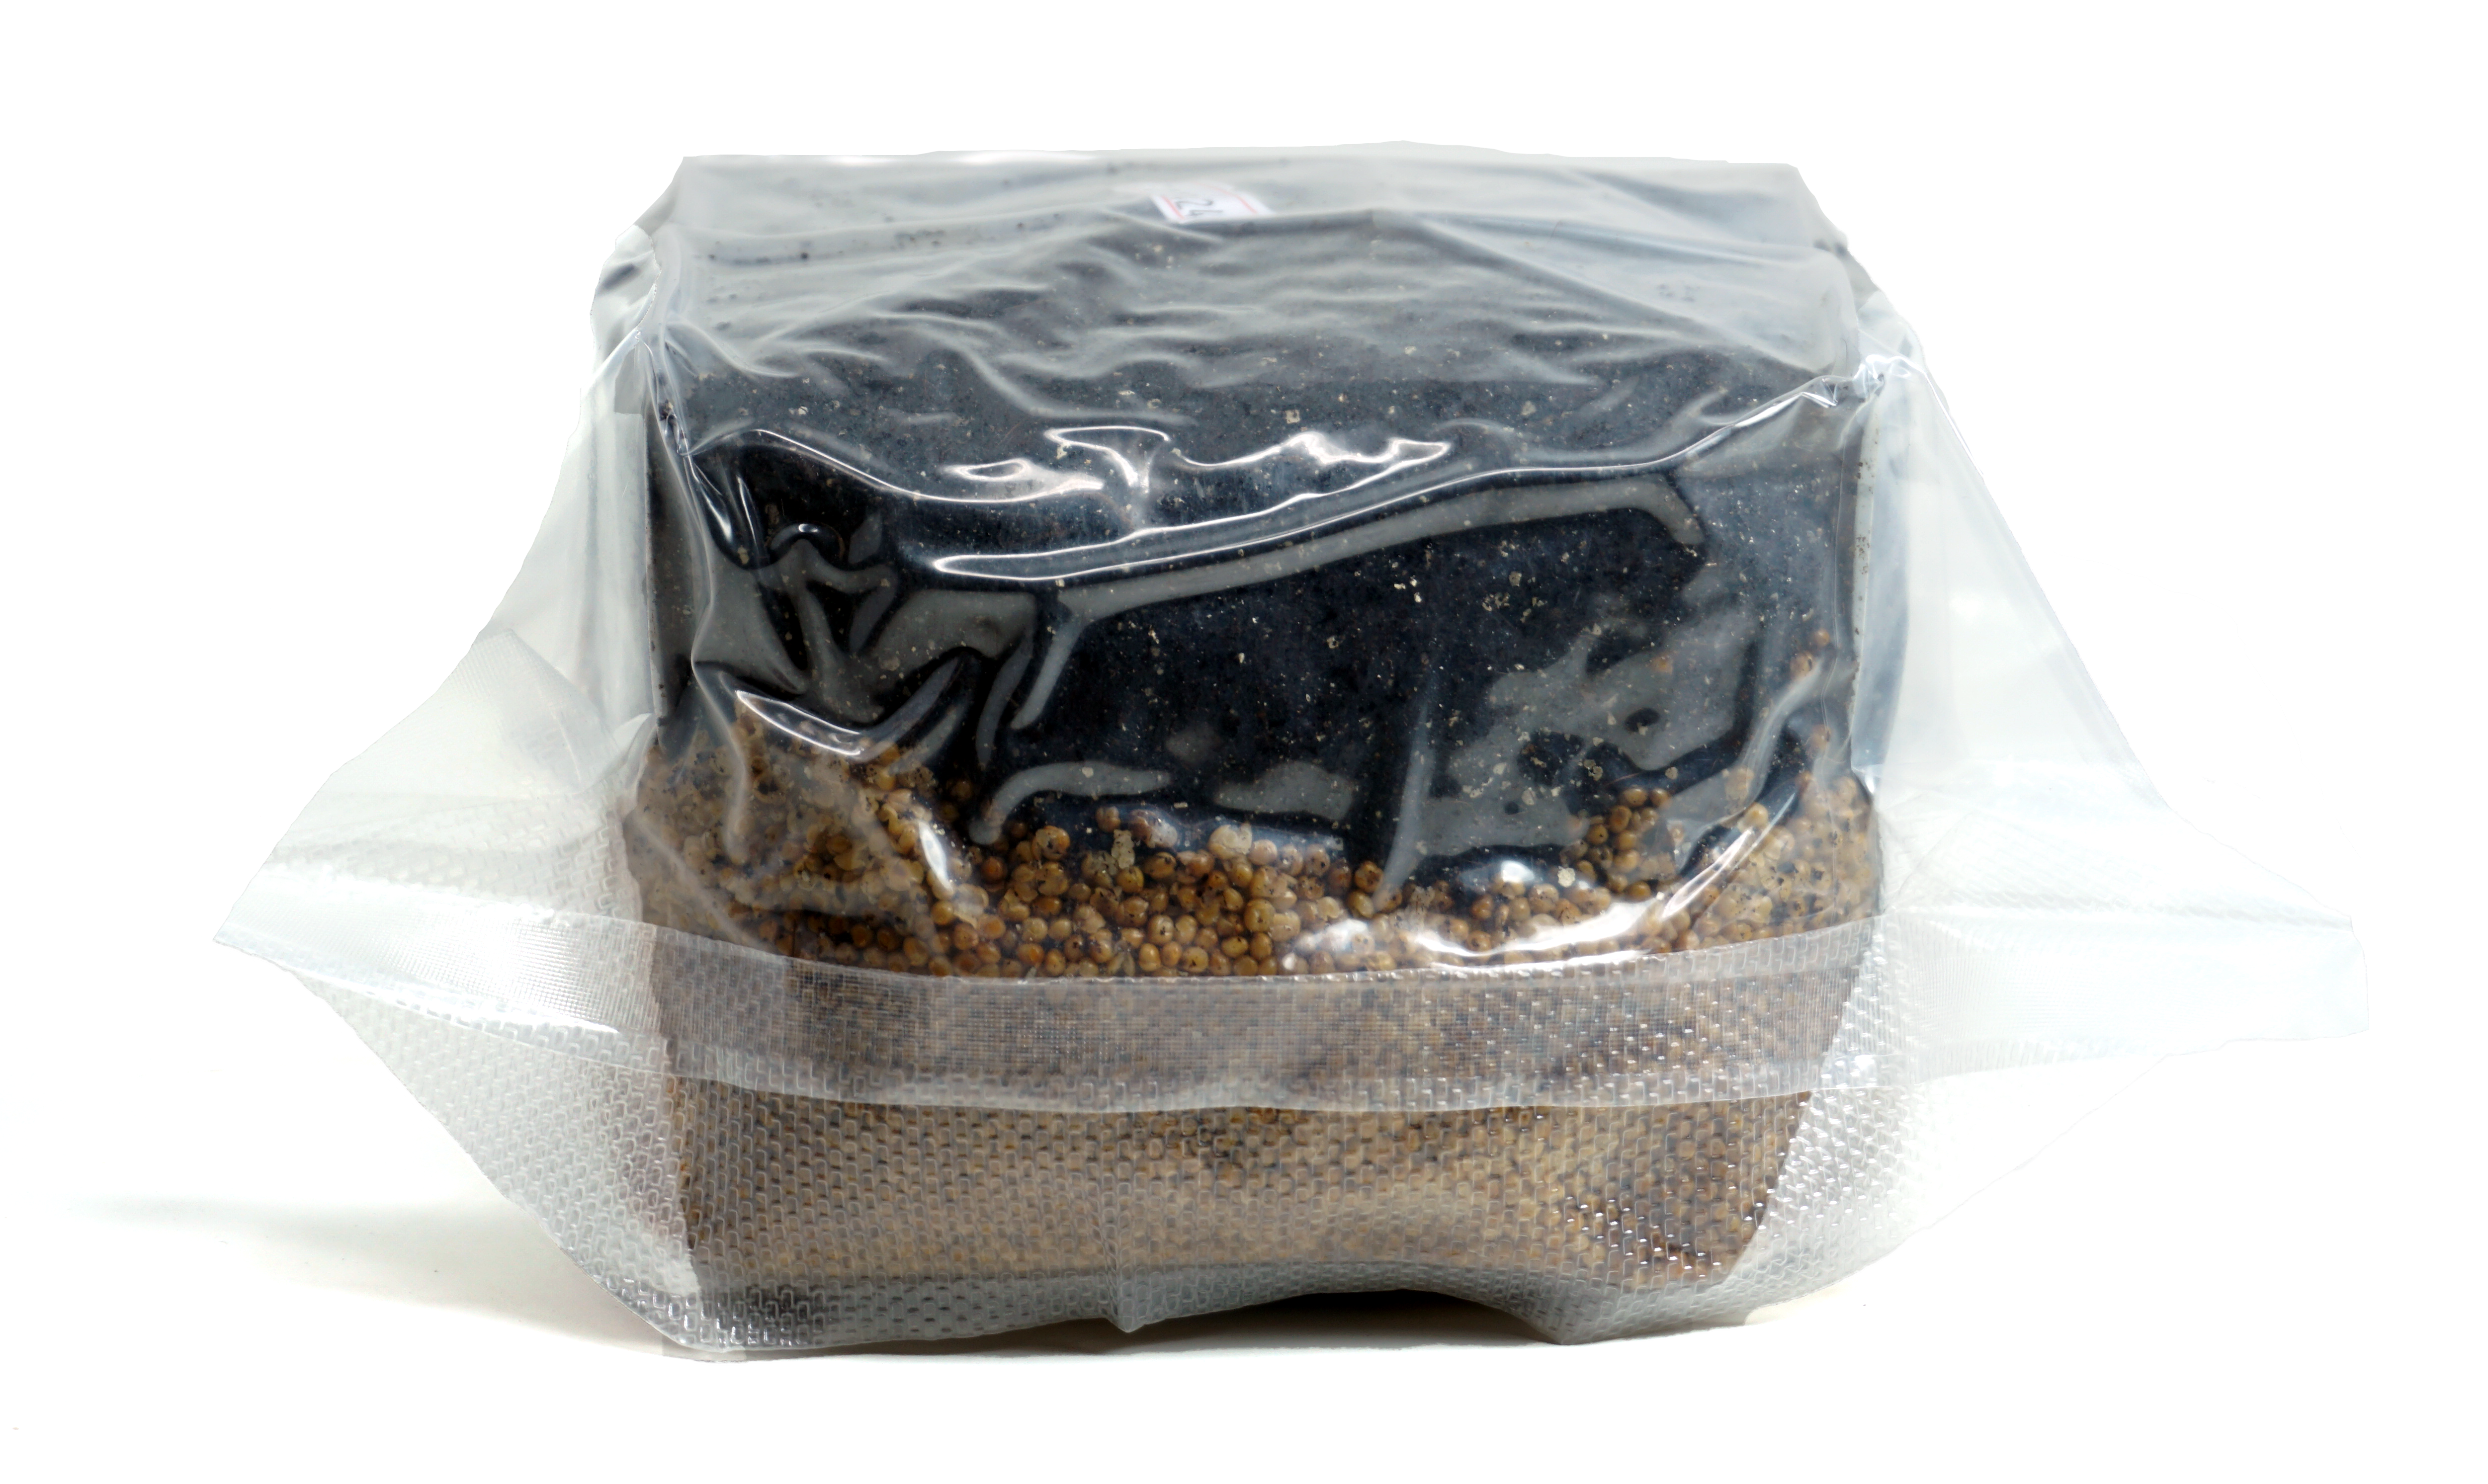 vacuum sealed packaging all in one mushroom growing kit